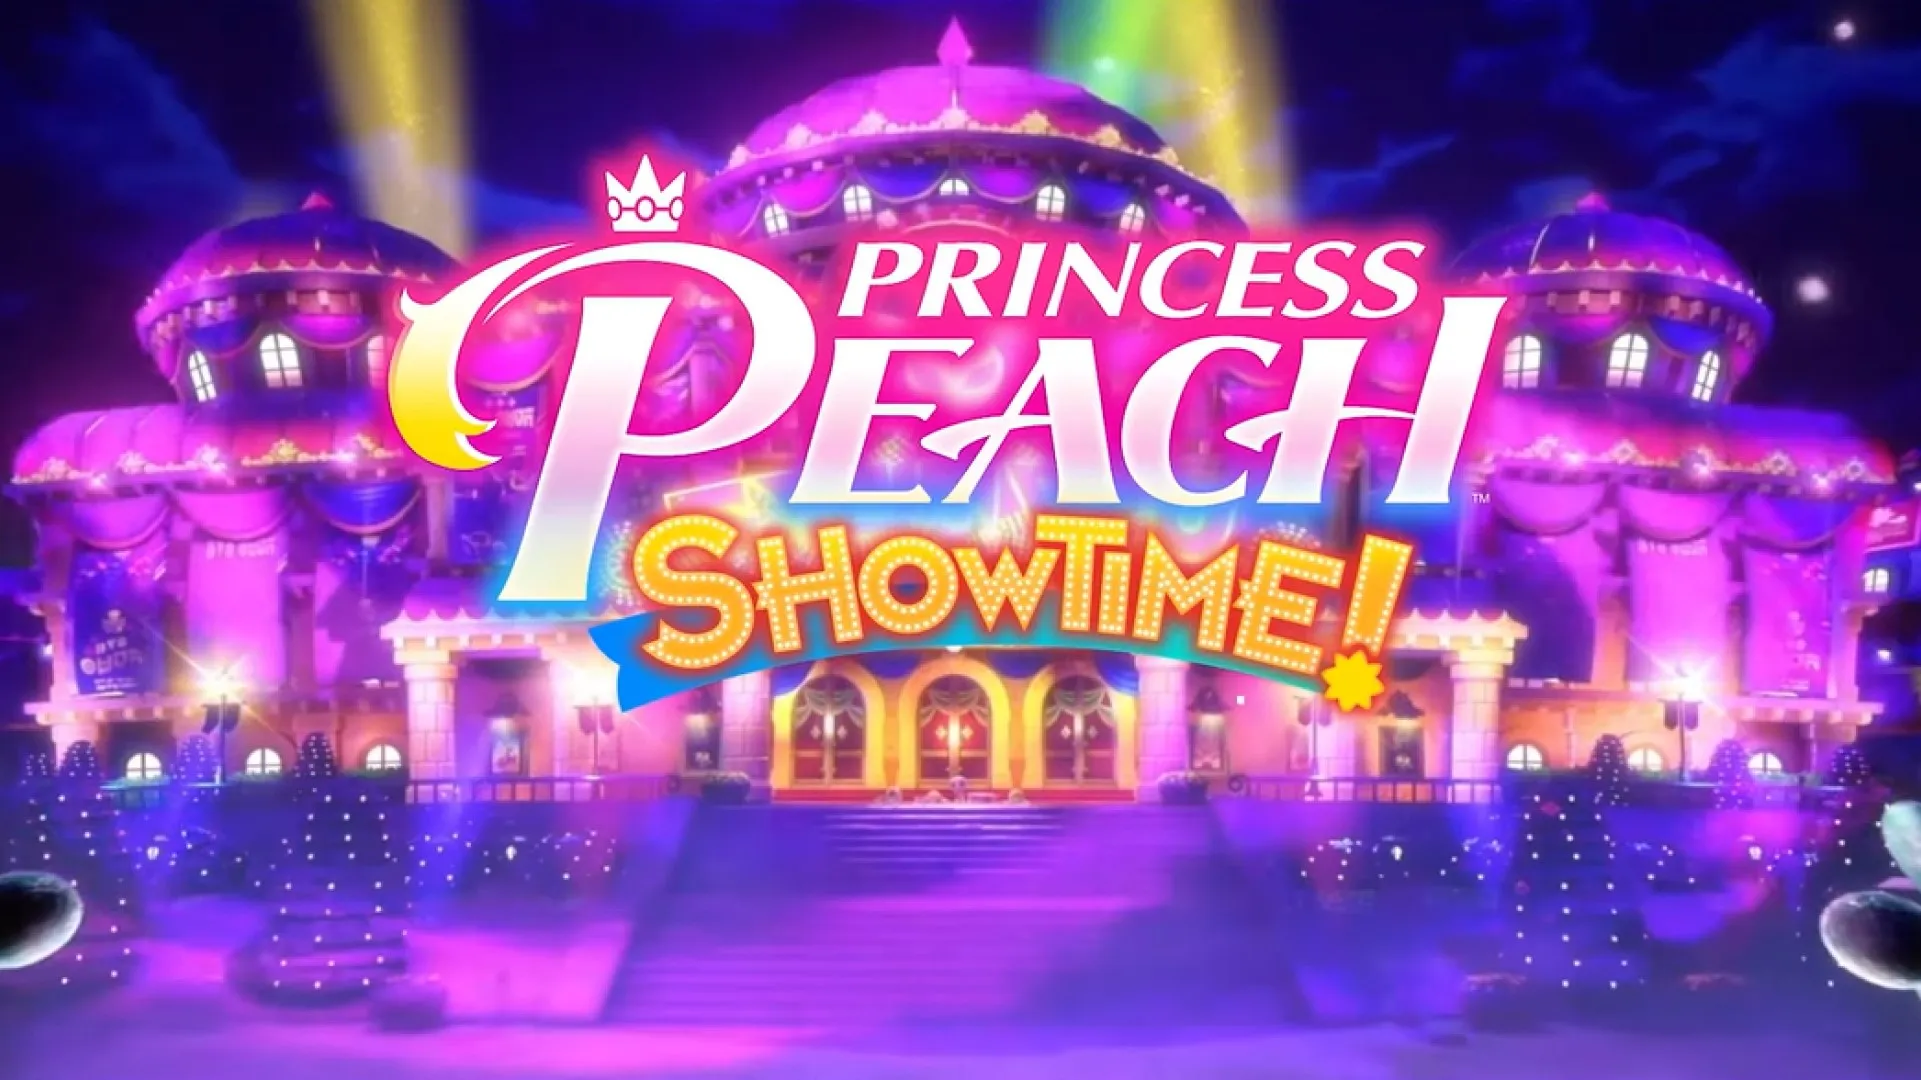 Nintendo Announces Princess Peach Showtime!